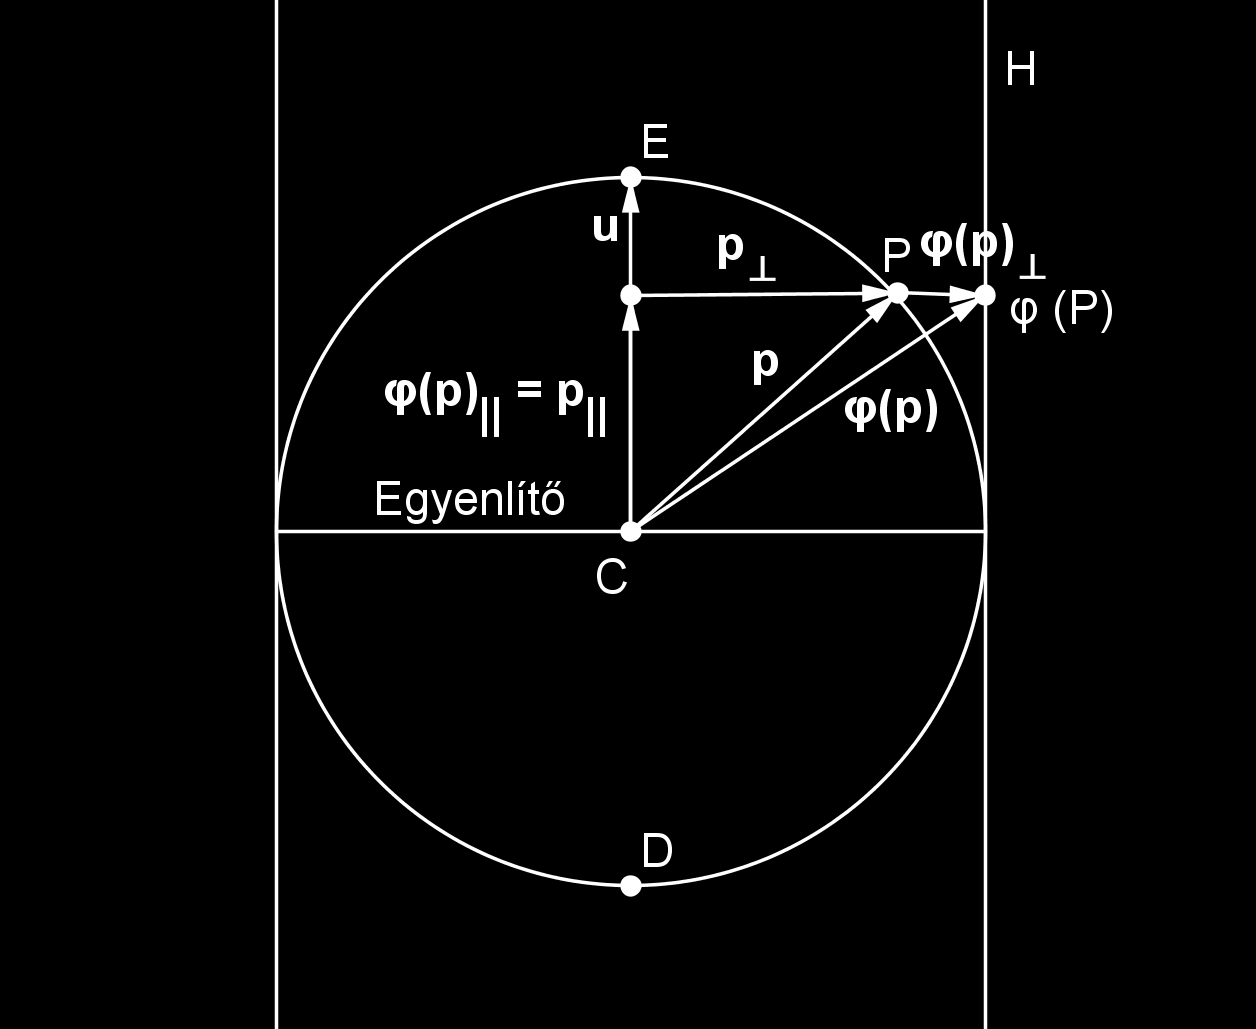 a ϕ ( p) párhuzamos komponensével, vagyis ϕ ( p) = p = ( u p) u. Továbbá p mer leges komponense felírható p = p ( u p) u alakban, illetve ϕ ( p) = λ p. Tehát ϕ ( p) = p + λ p alakban adható meg.